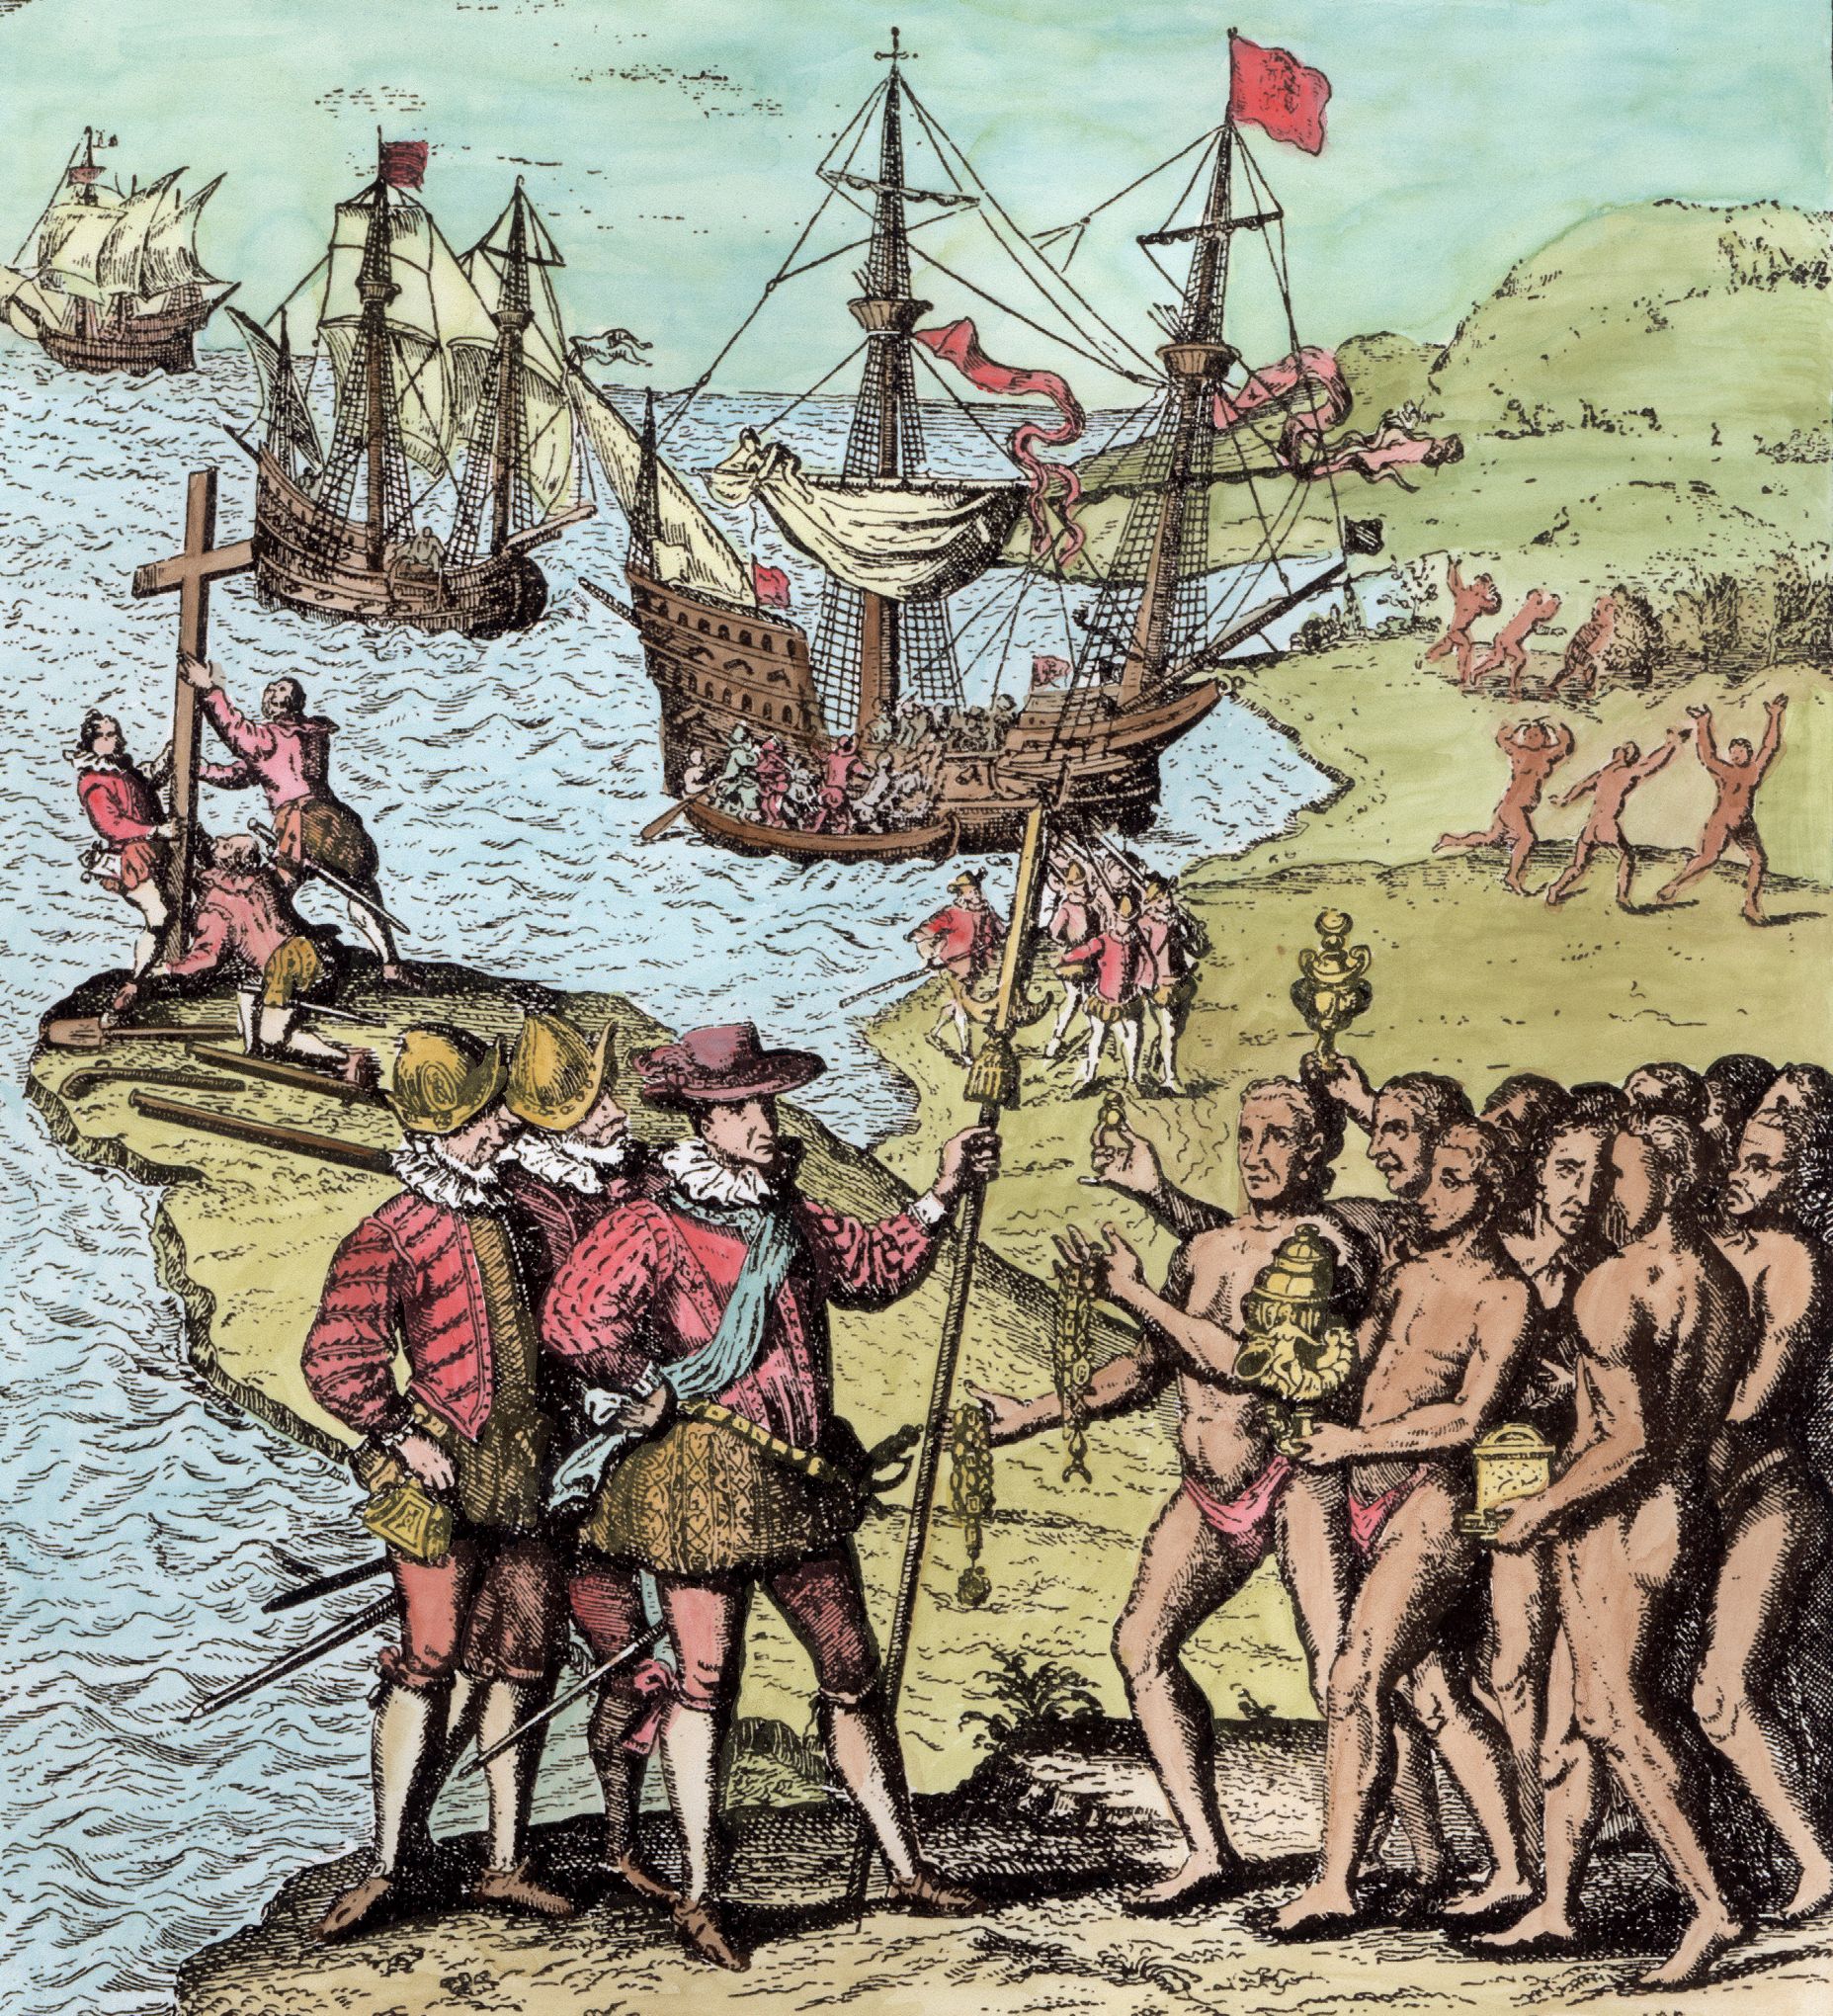 25 Septembre 1493 Pour Son Deuxieme Voyage Colomb Met Le Cap Sur Les Antilles Et Les Caraibes